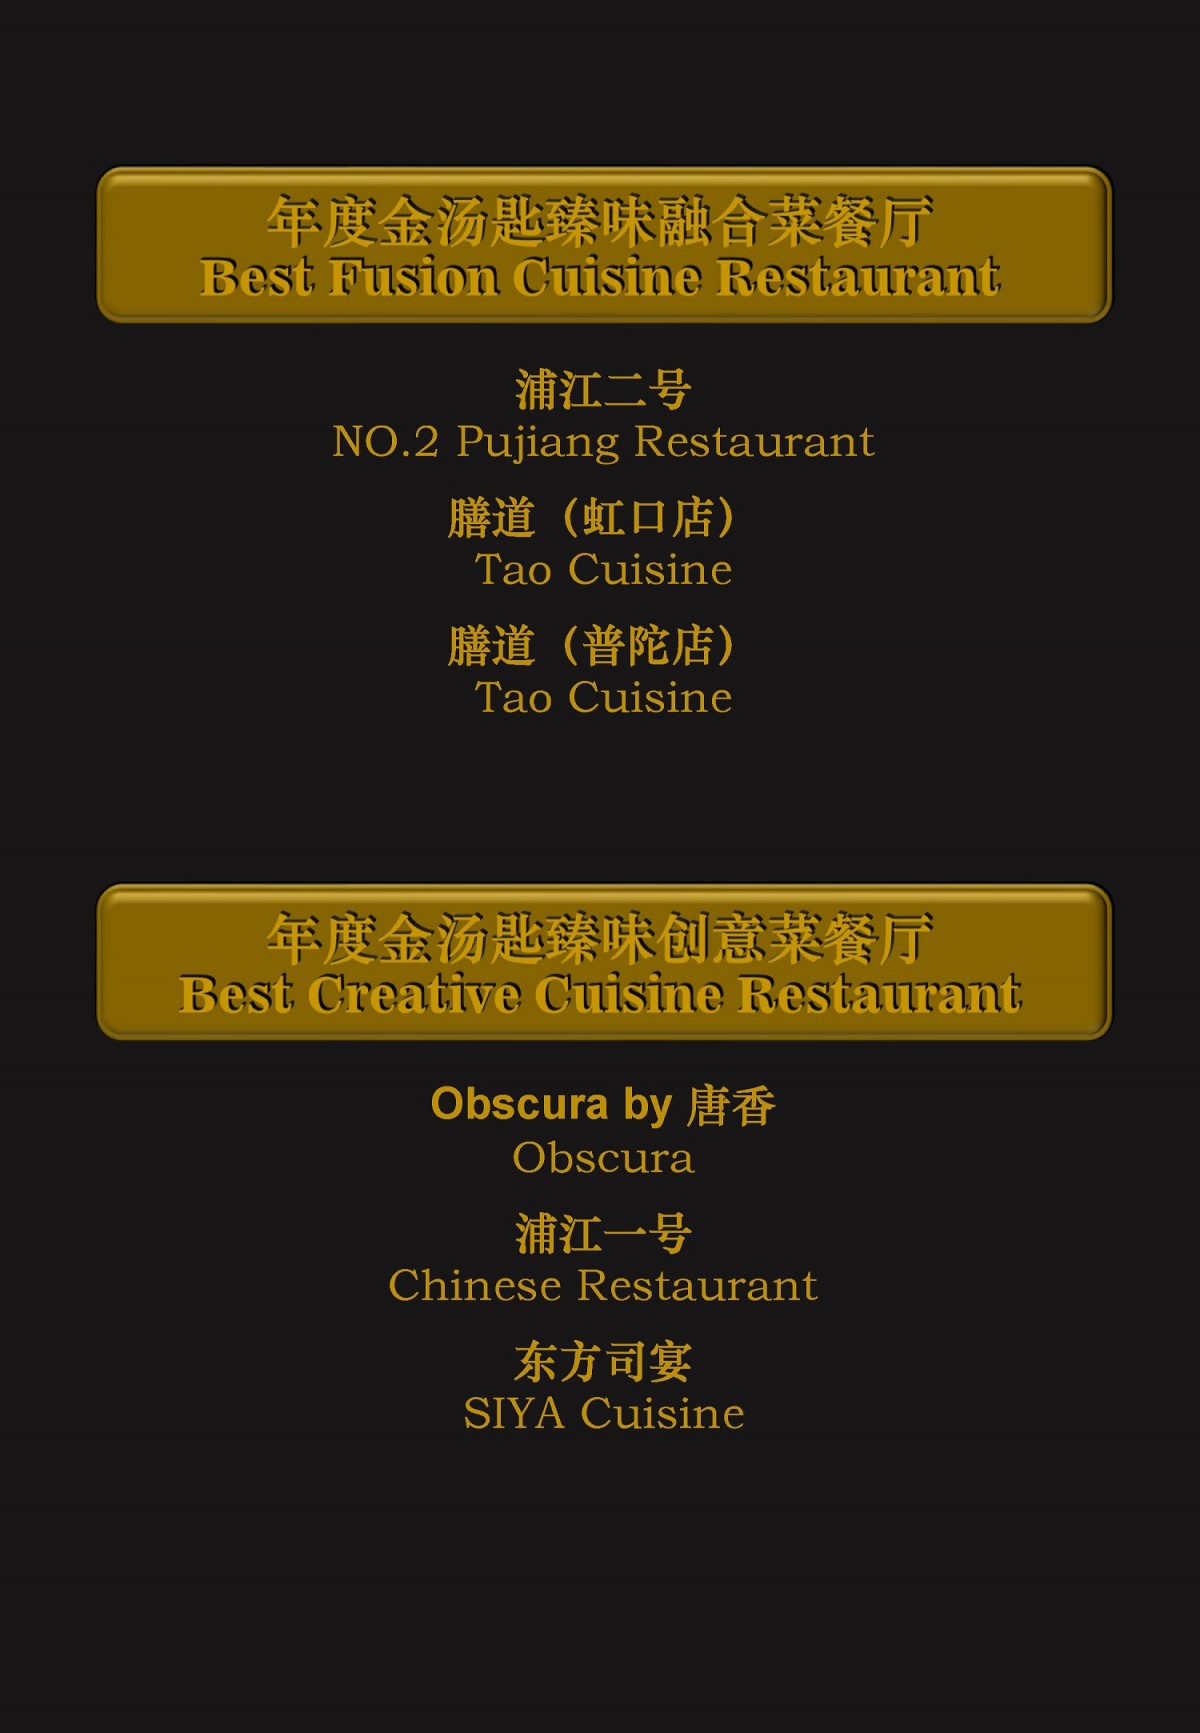 2021年度最佳金汤匙餐厅榜单2_页面_06